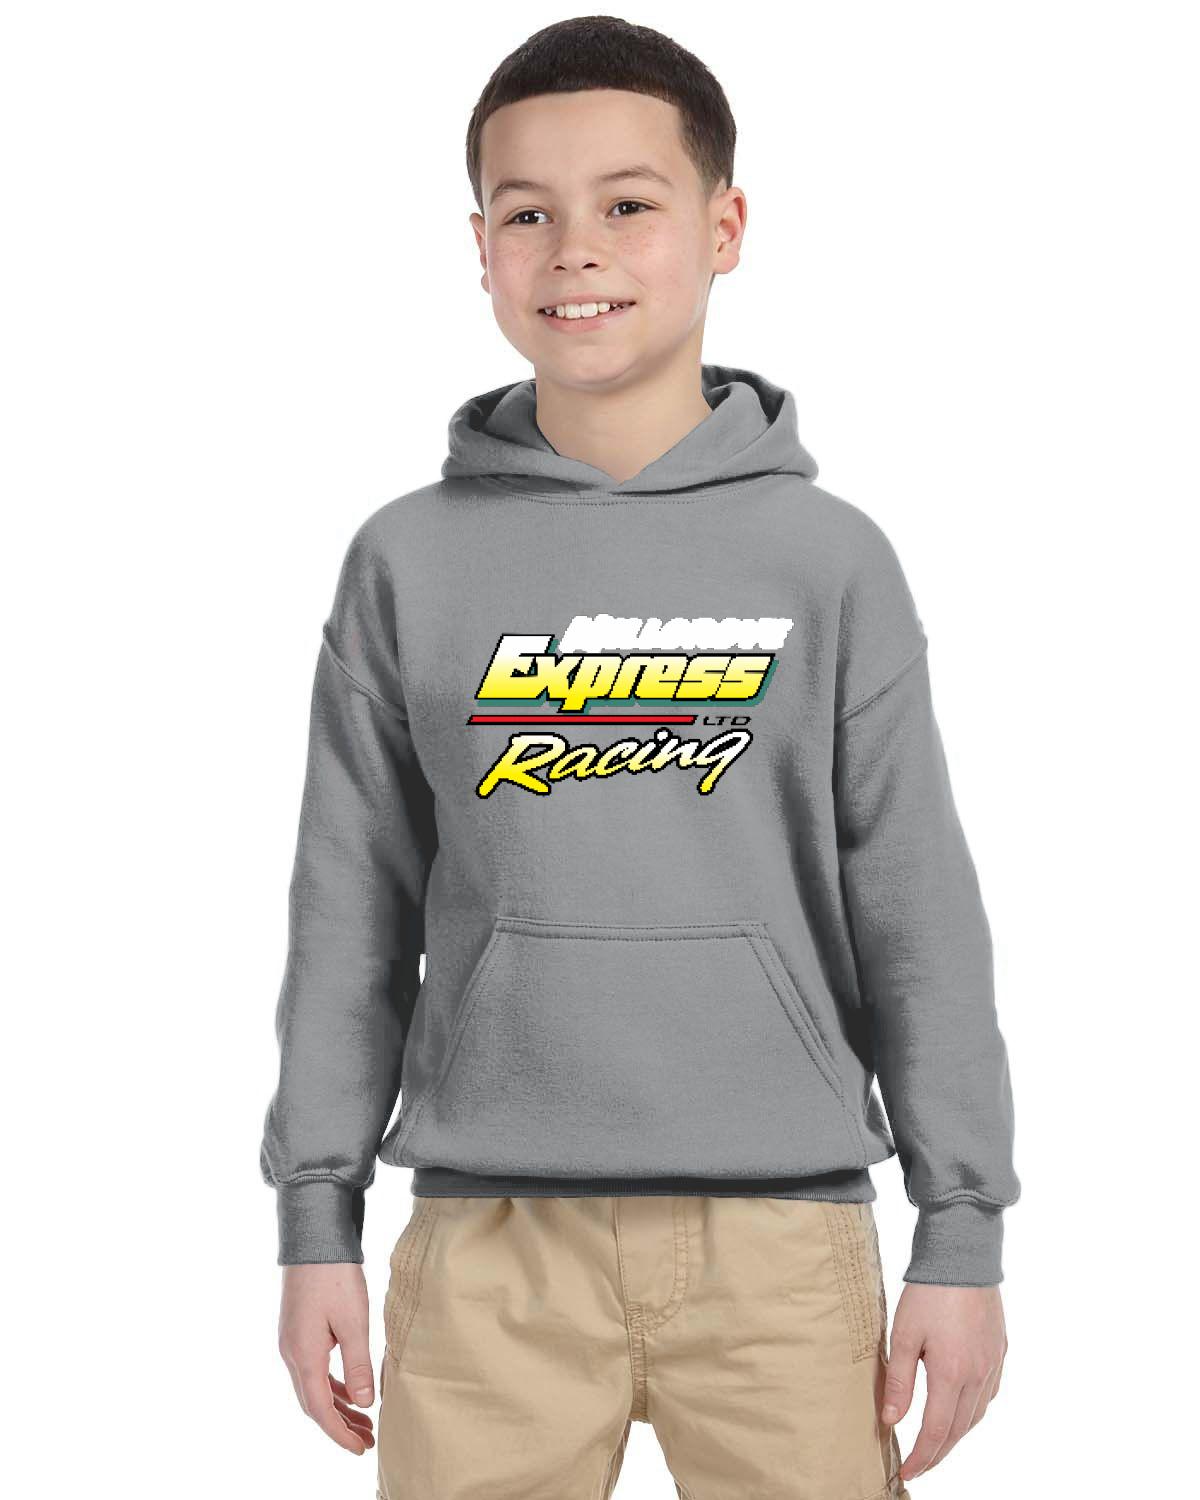 Millgrove Express Racing Kid's Hoodie